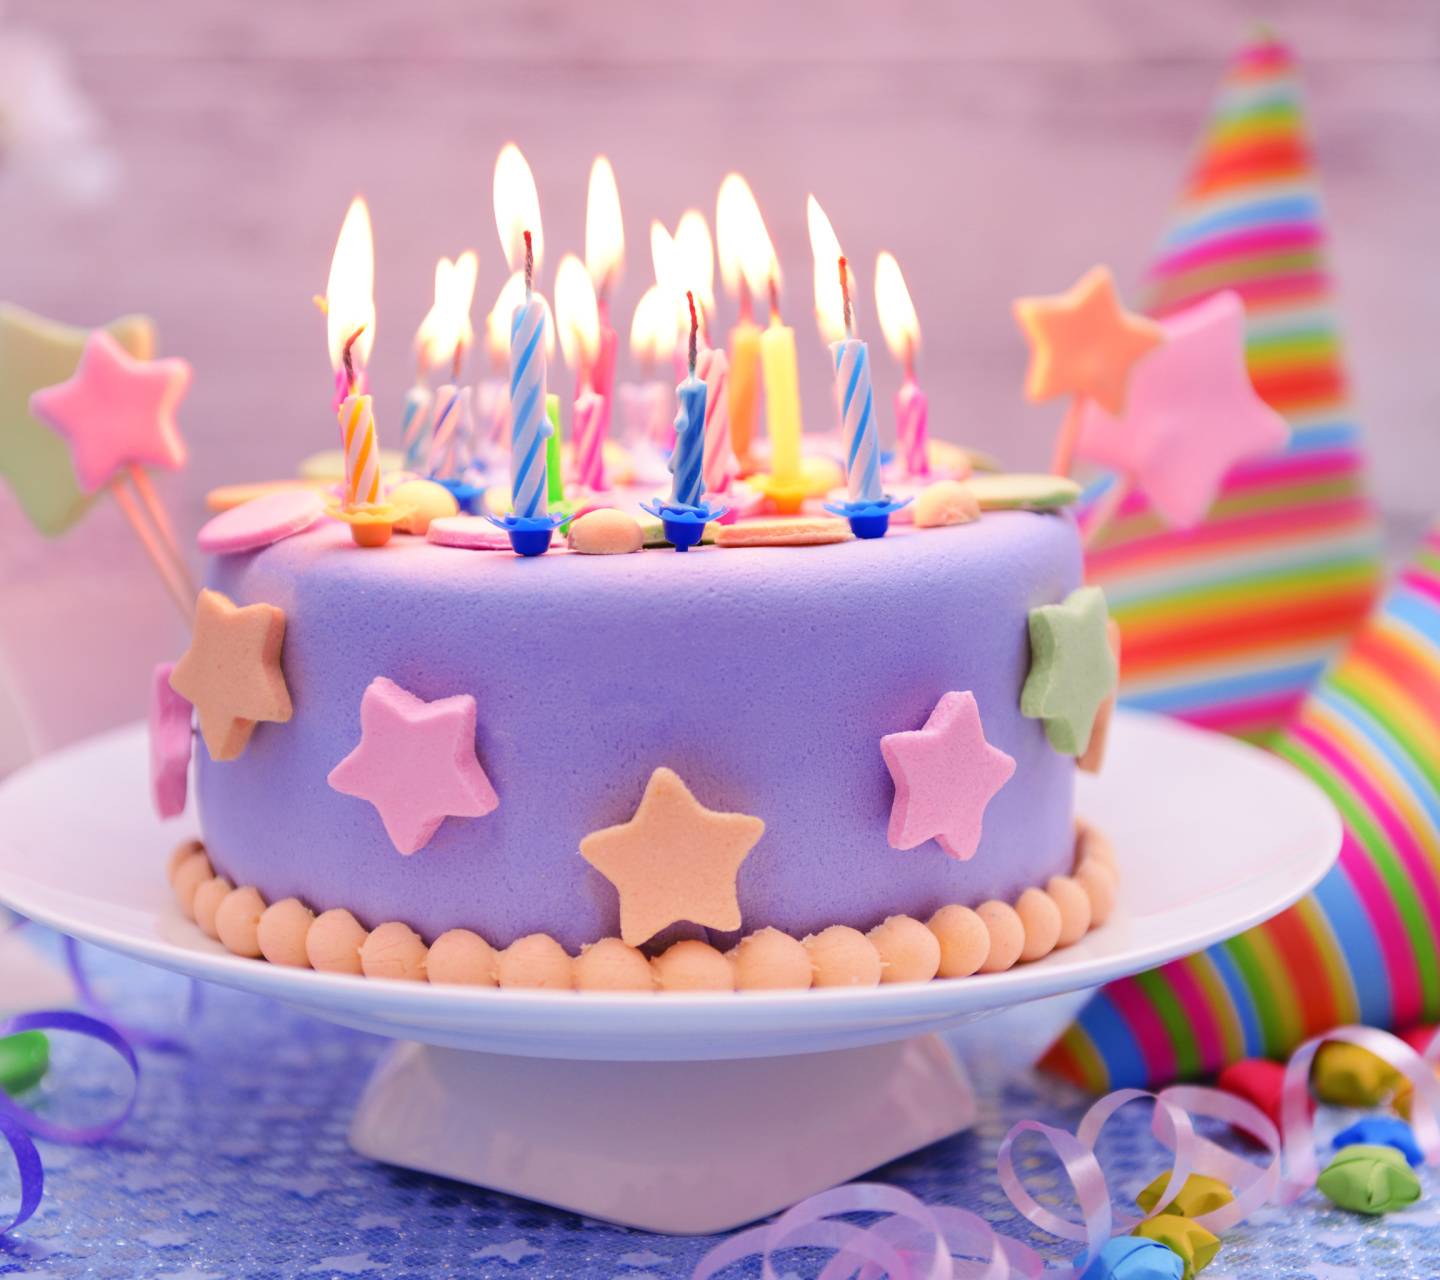 عکس کیک تولد لاکچری دخترانه با شمع های روشن رنگارنگ زیبا